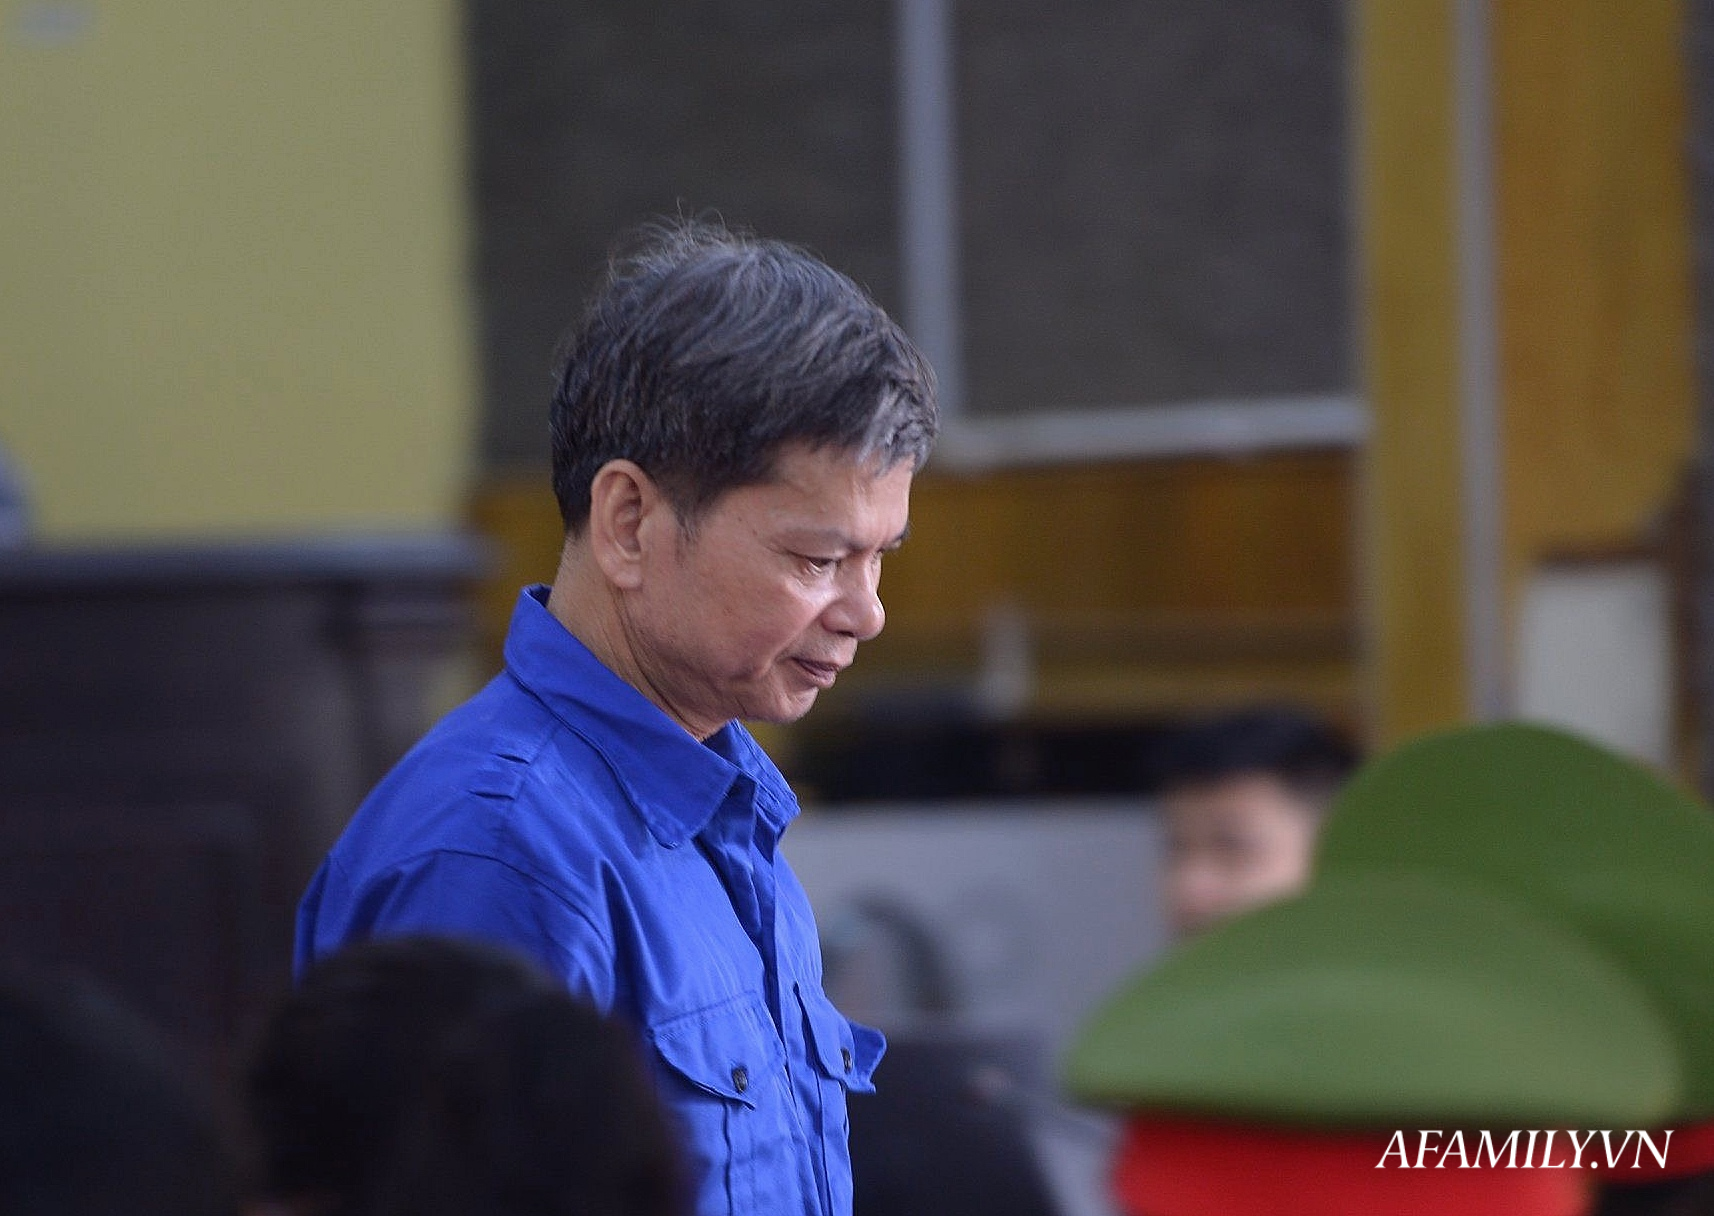 Trưởng phòng Khảo thí Sở GD&ĐT Sơn La bị đề nghị mức án 25 năm tù về tội nâng điểm và nhận hối lộ hơn 1 tỷ đồng - Ảnh 2.